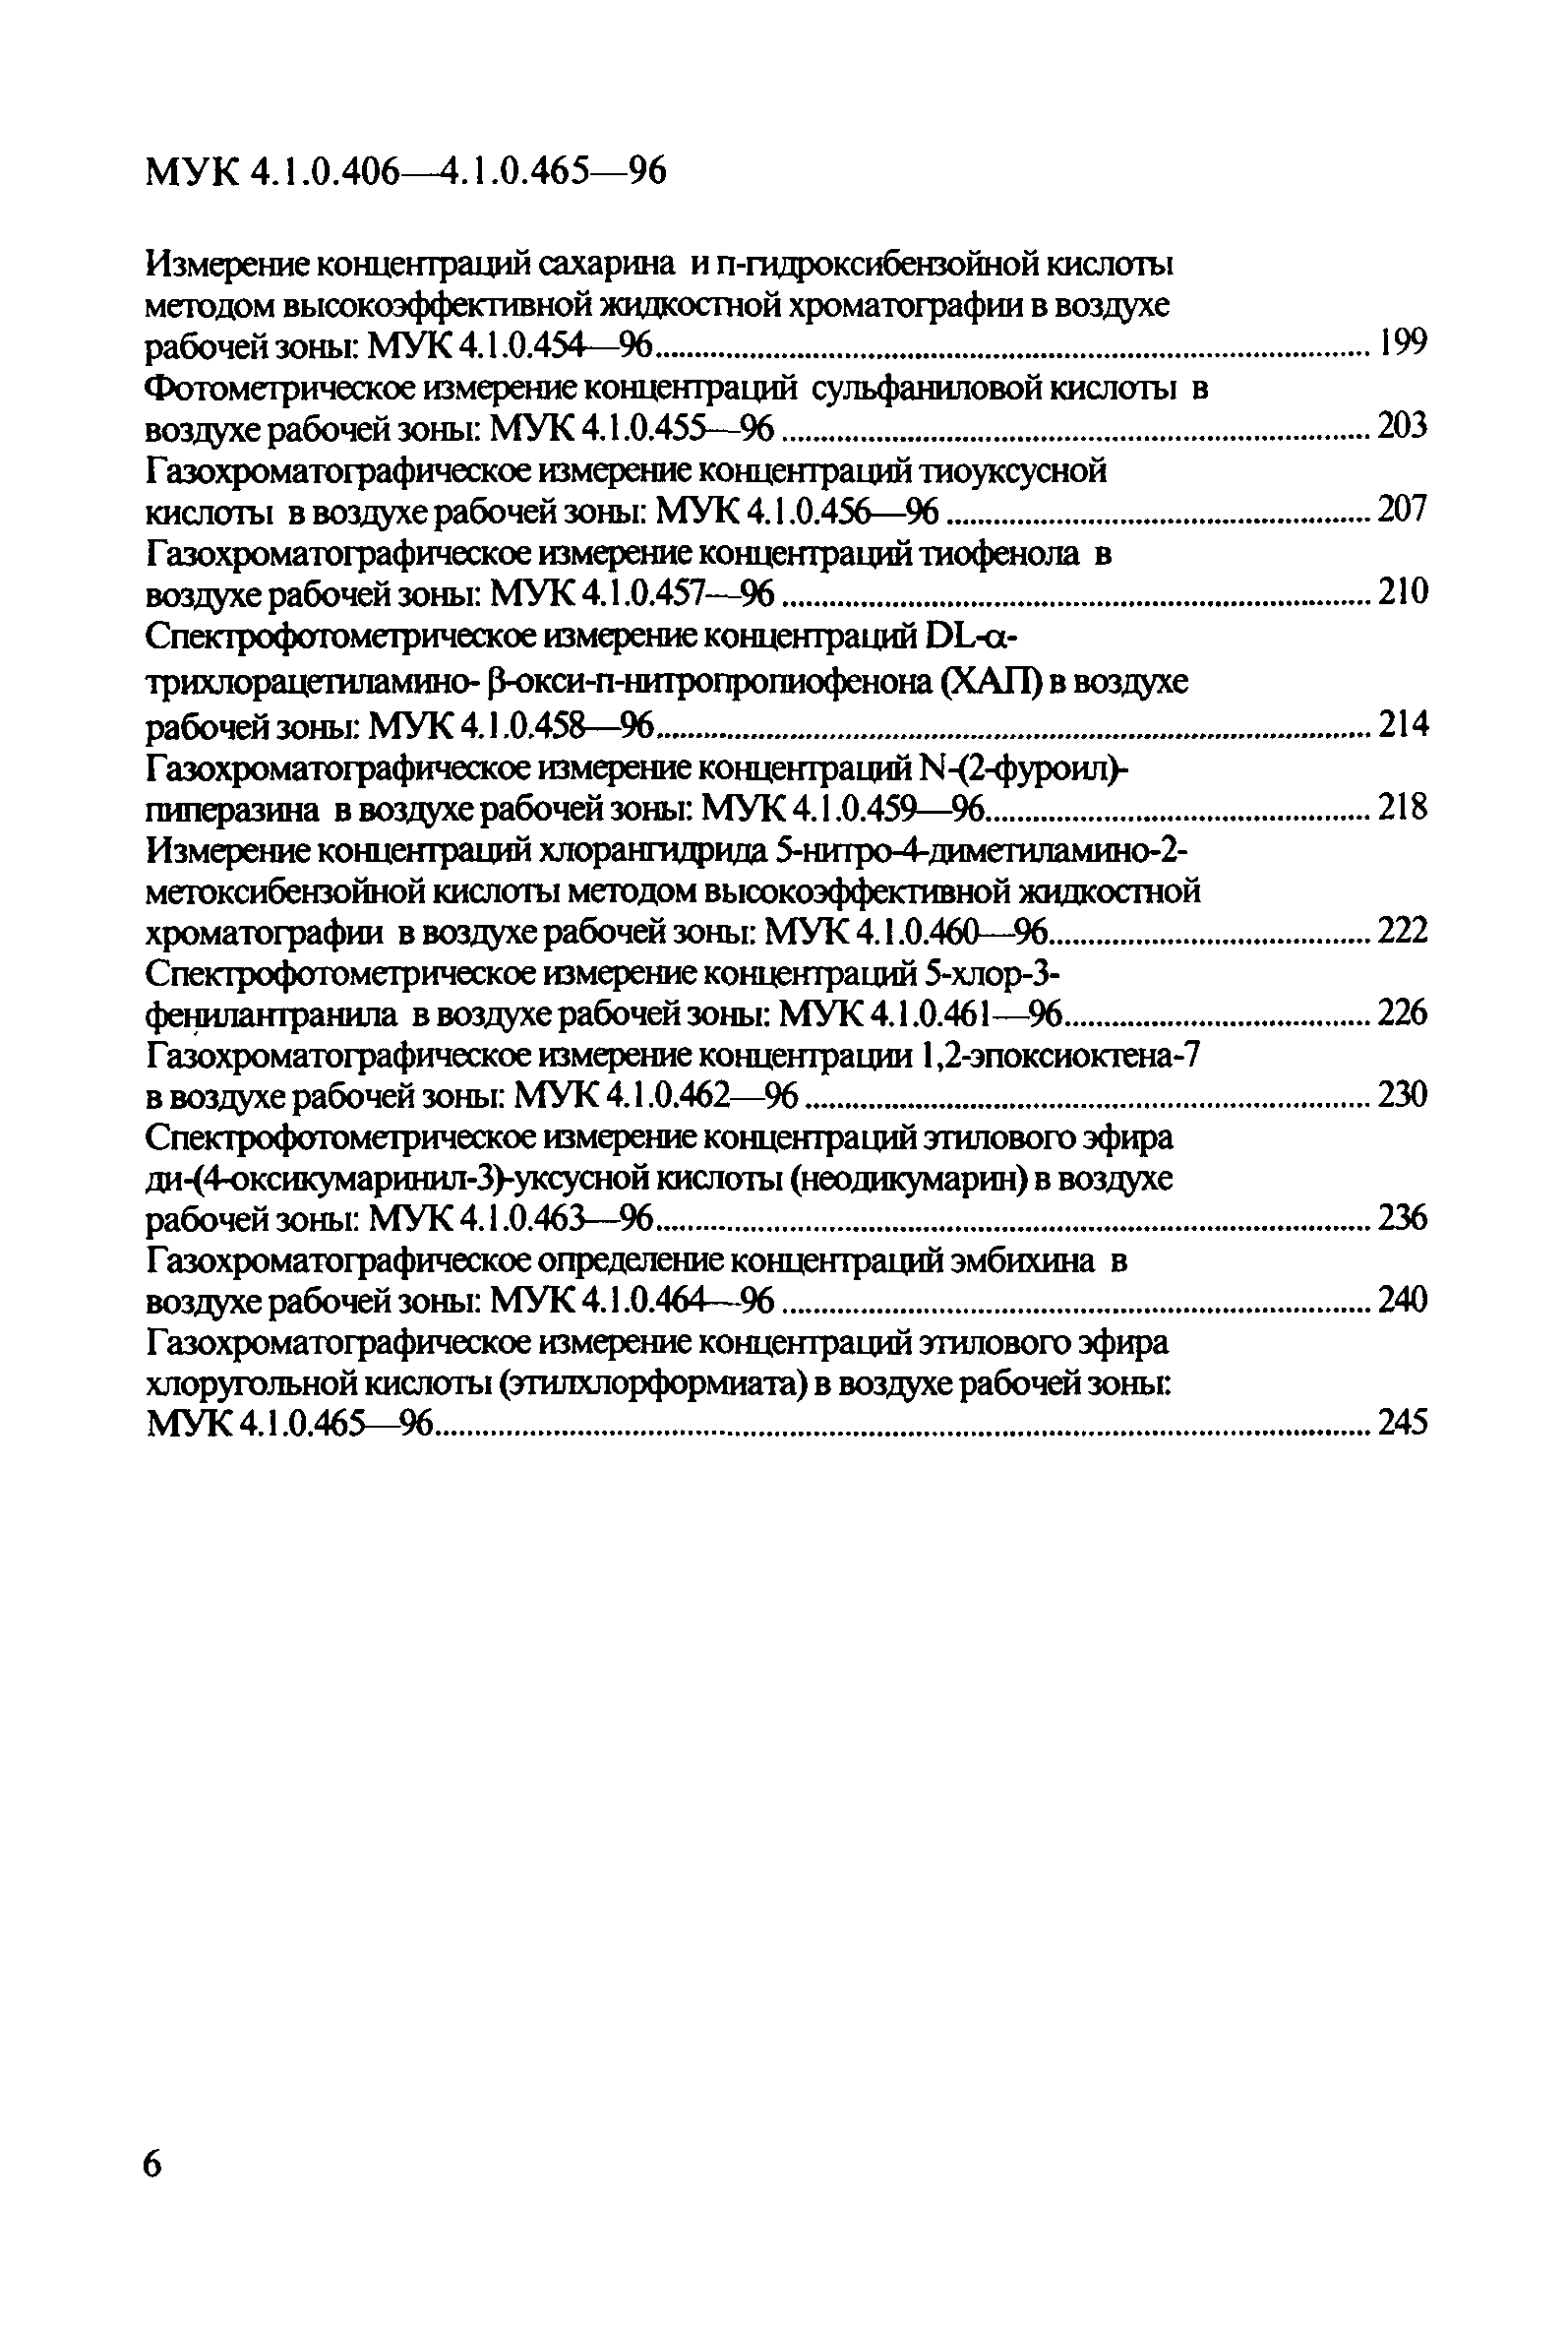 МУК 4.1.0.412-96